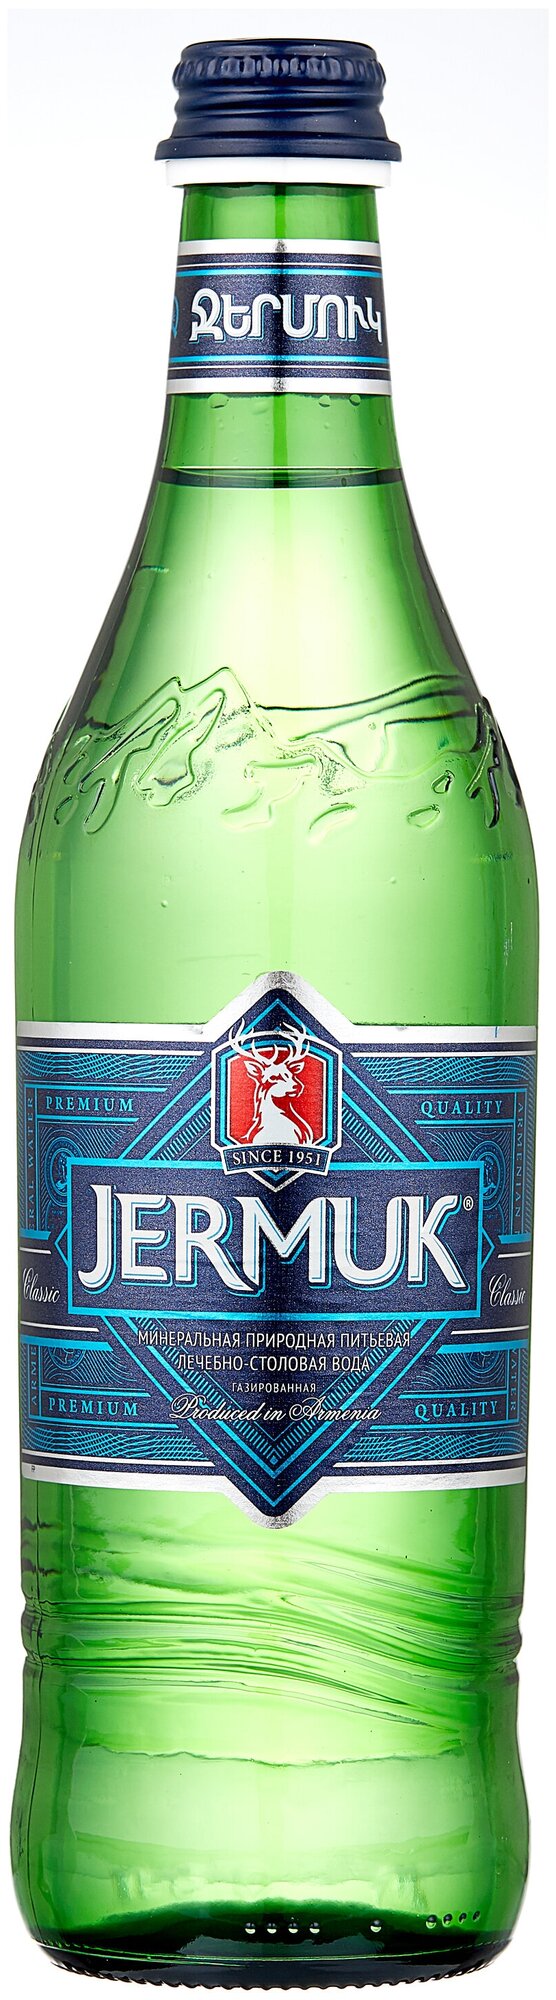 Минеральная вода Jermuk (Джермук) 0.5 л стекло 1 штука - фотография № 1